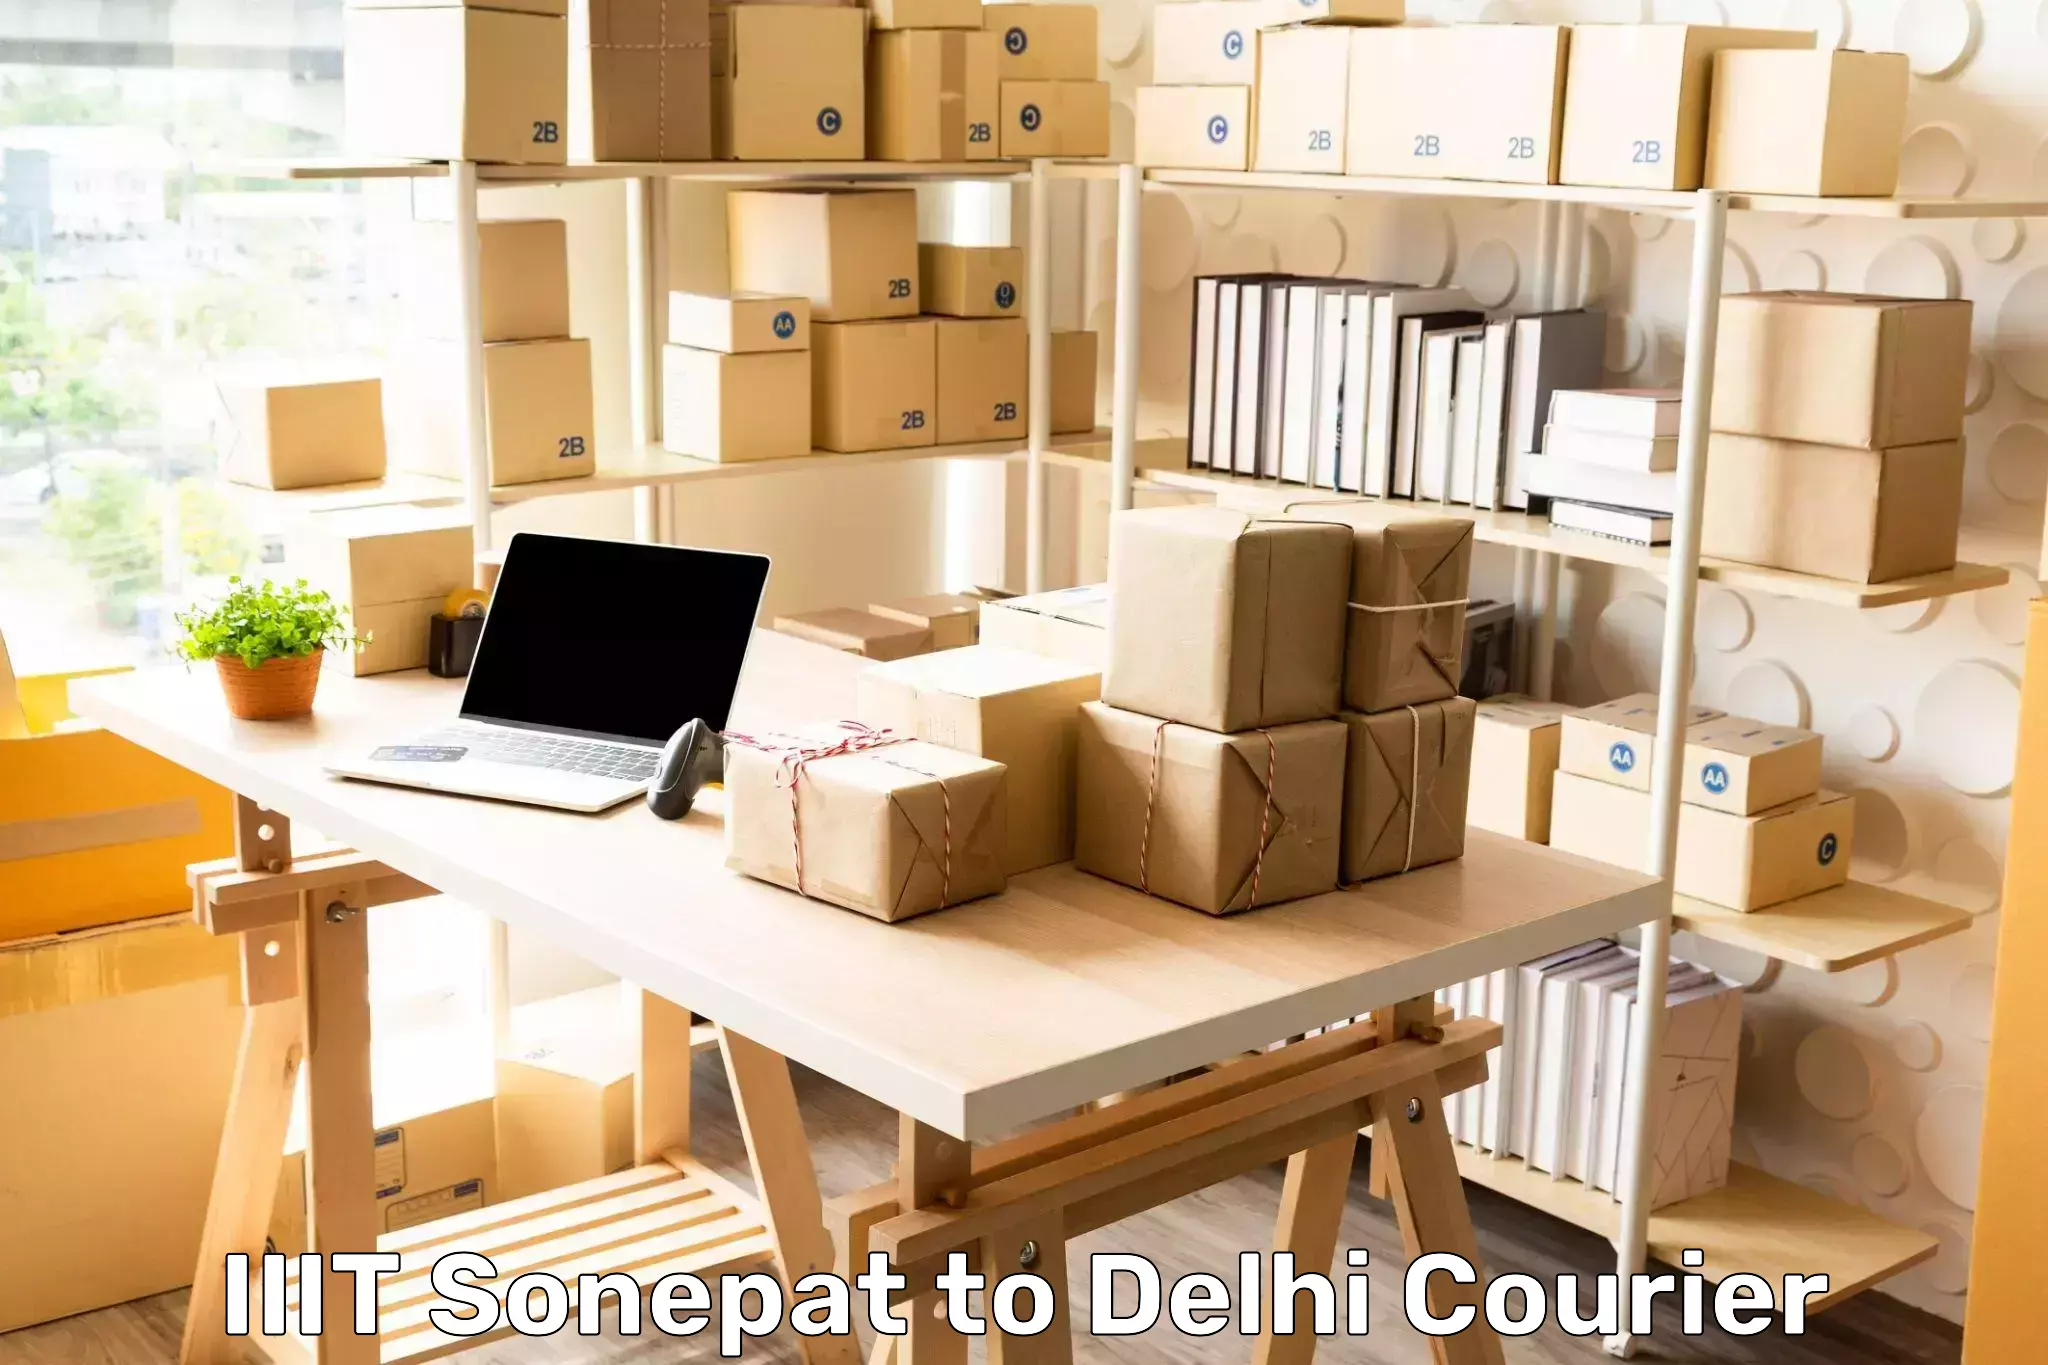 On-call courier service IIIT Sonepat to IIT Delhi